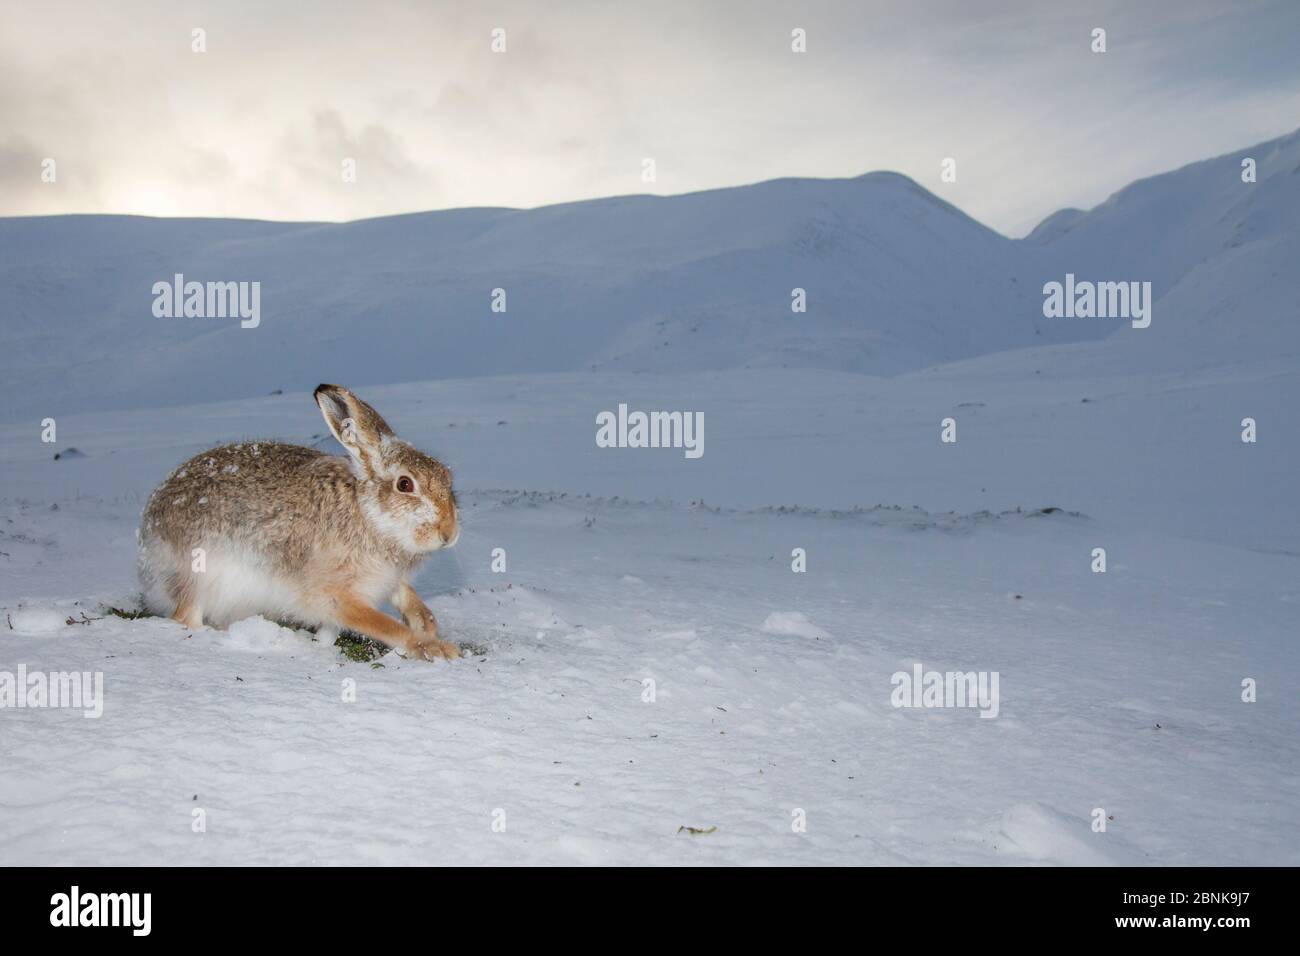 Lièvre d'Amérique (Lepus timidus) creusant dans la neige pour se nourrir de la végétation sous-jacente, parc national de Cairngorms, Écosse, Royaume-Uni, décembre. Banque D'Images